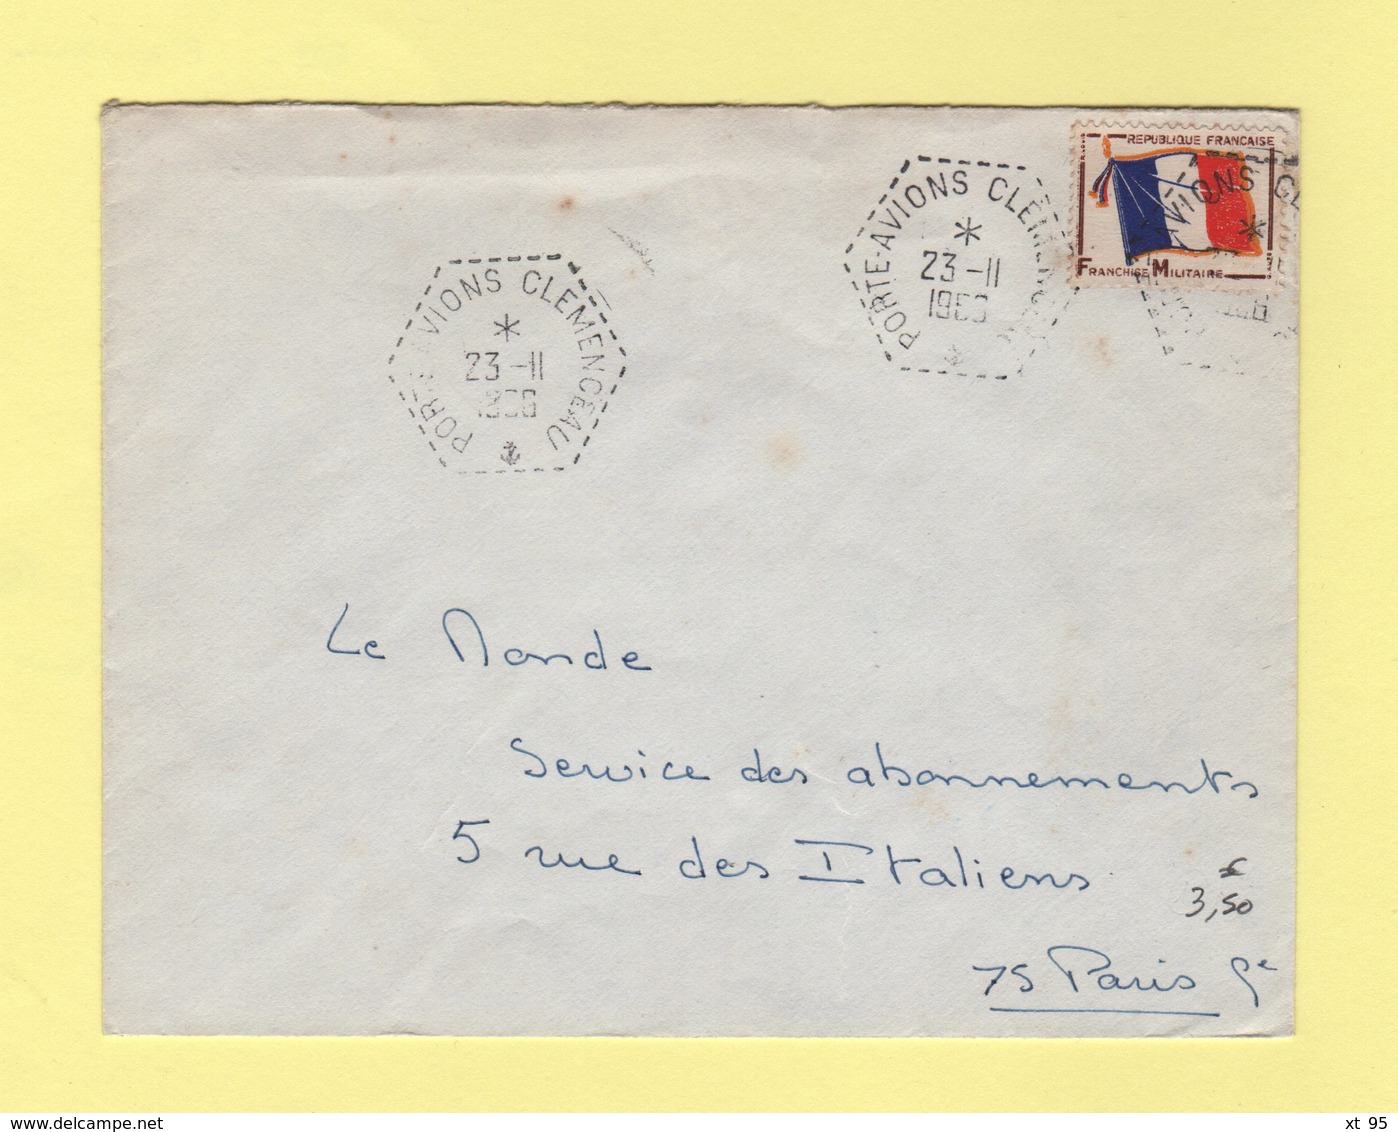 Poste Navale - Porte Avion Clemenceau - 23-11-1966 - Timbre FM - Seepost